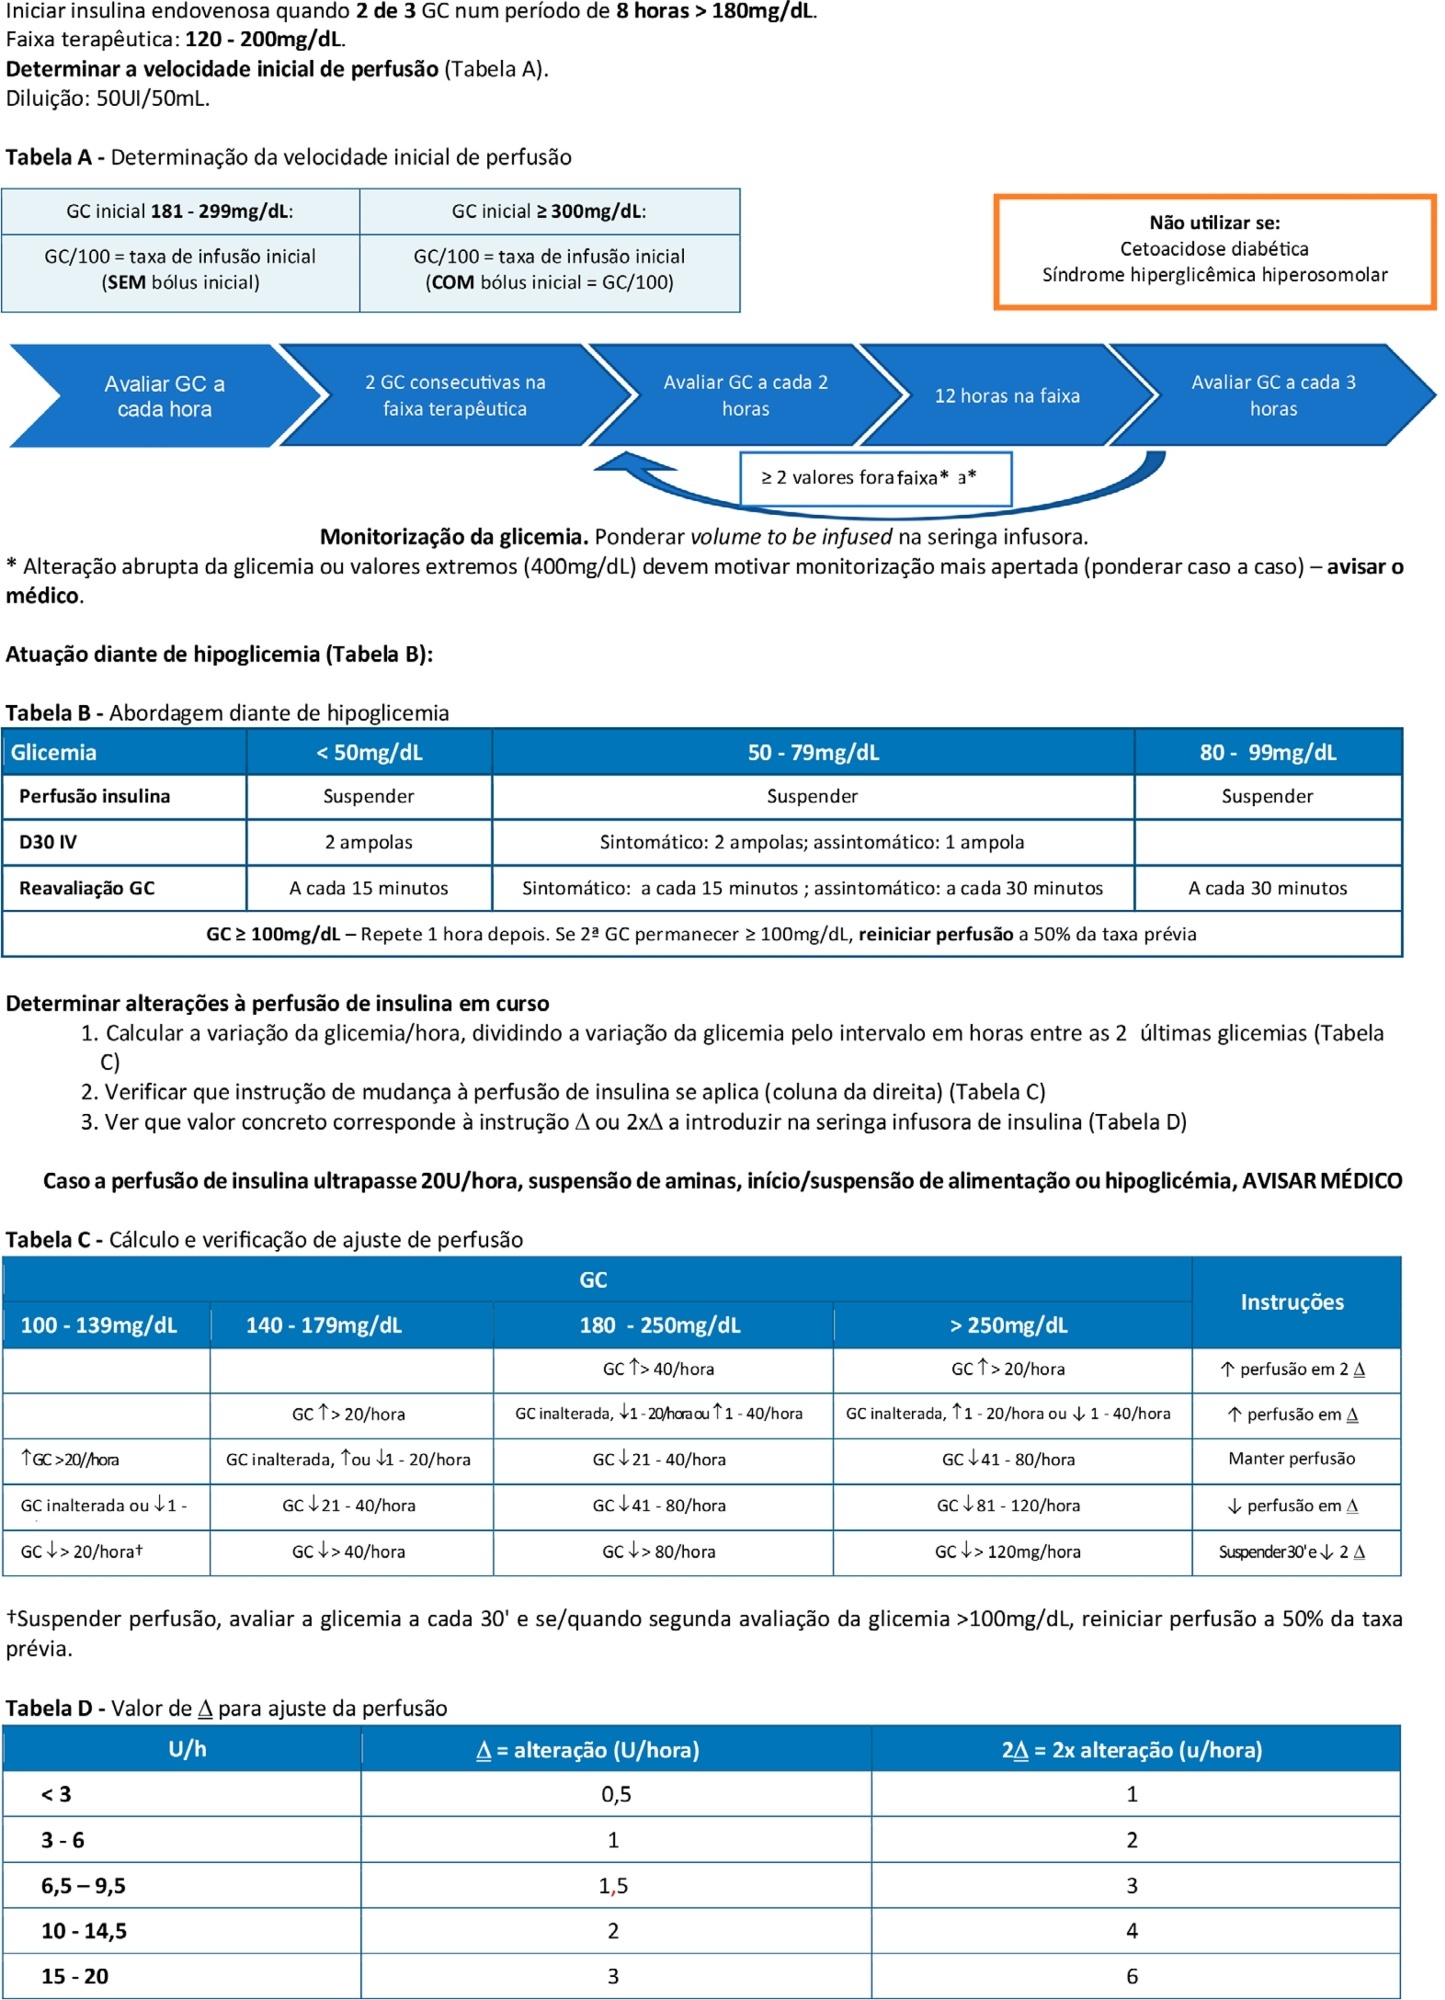 GlucoSTRESS – Projeto de otimização do controle glicêmico em uma unidade de cuidados intensivos portuguesa nível C (III)